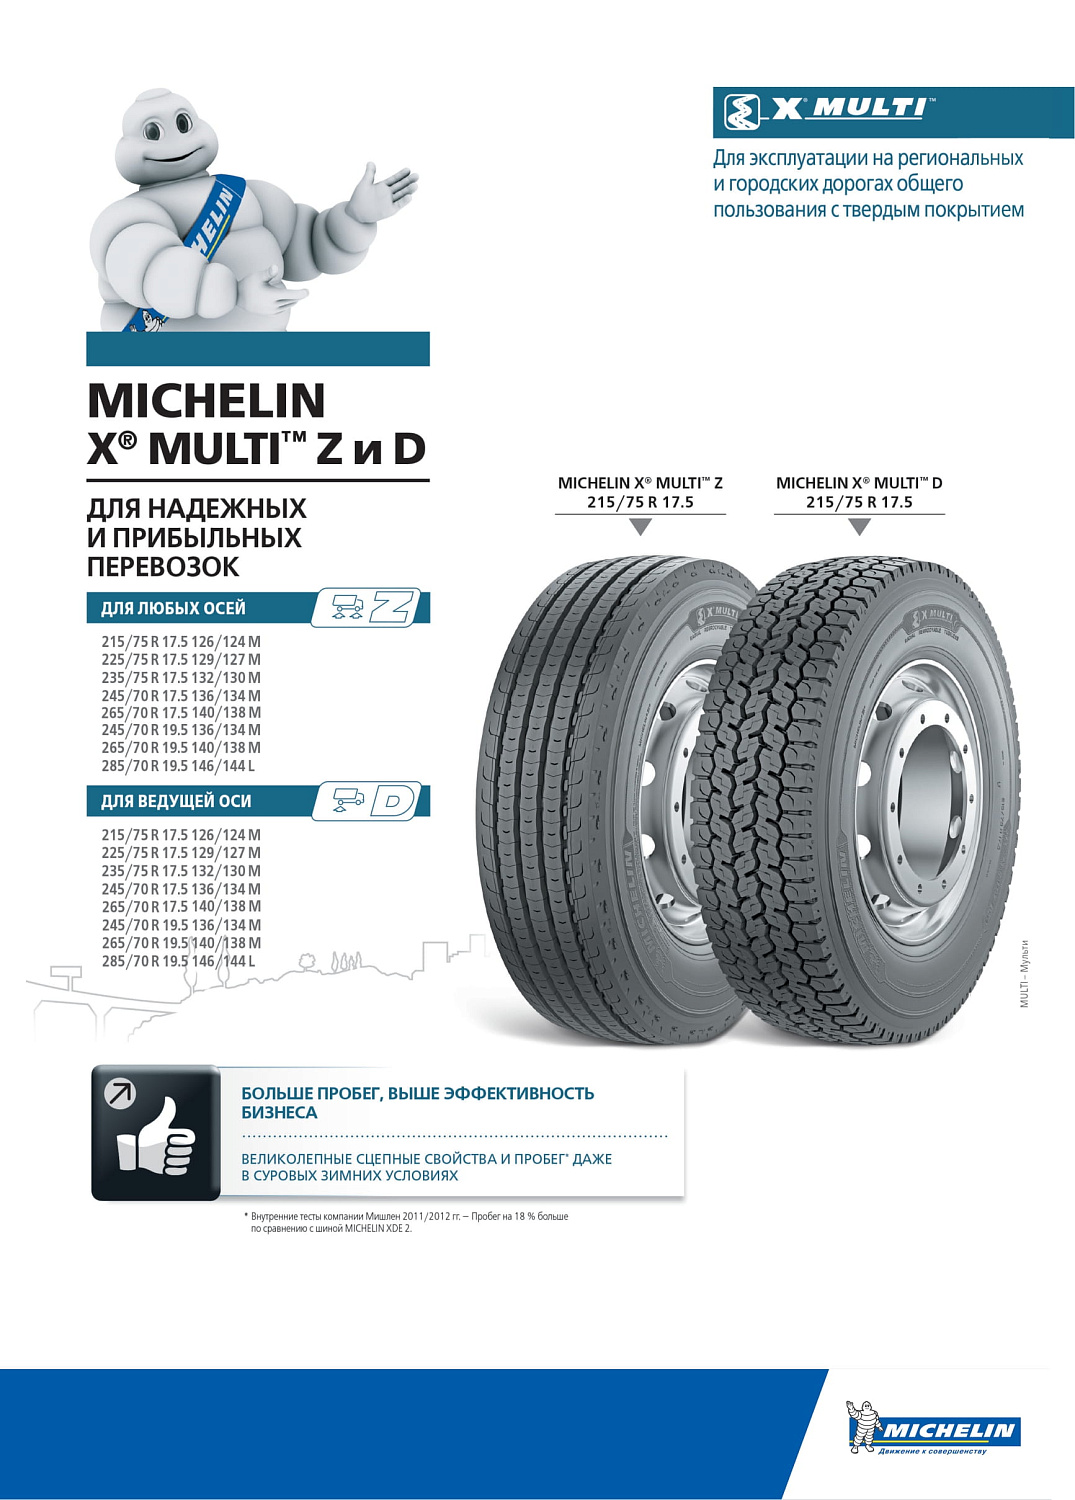 Michelin X Multi D 235/75 R17.5 TL